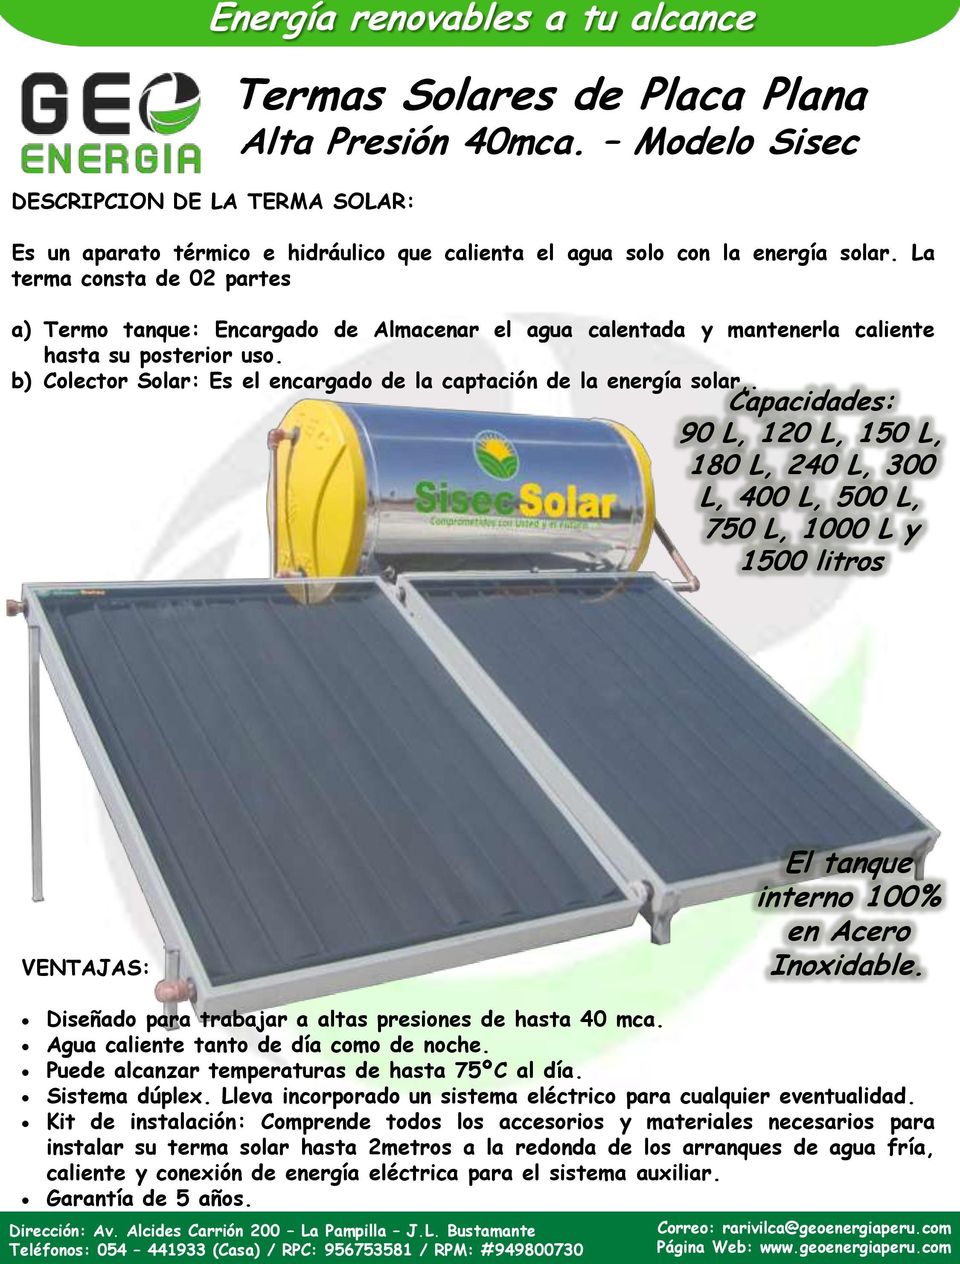 b) Colector Solar: Es el encargado de la captación de la energía solar,.